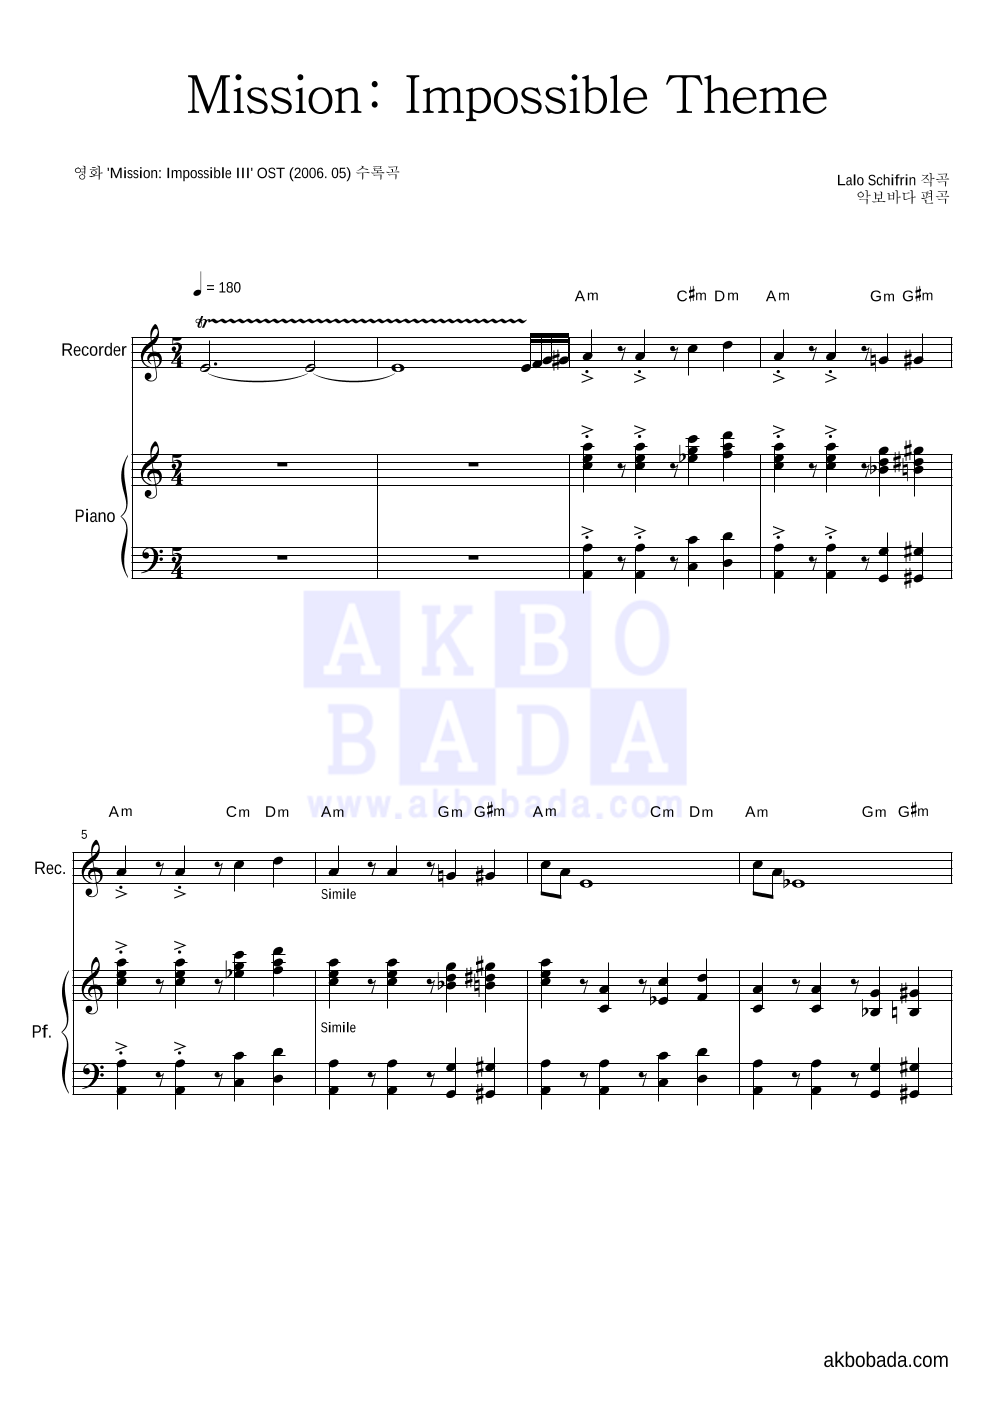 Lalo Schifrin - Mission: Impossible Theme 리코더&피아노 악보 